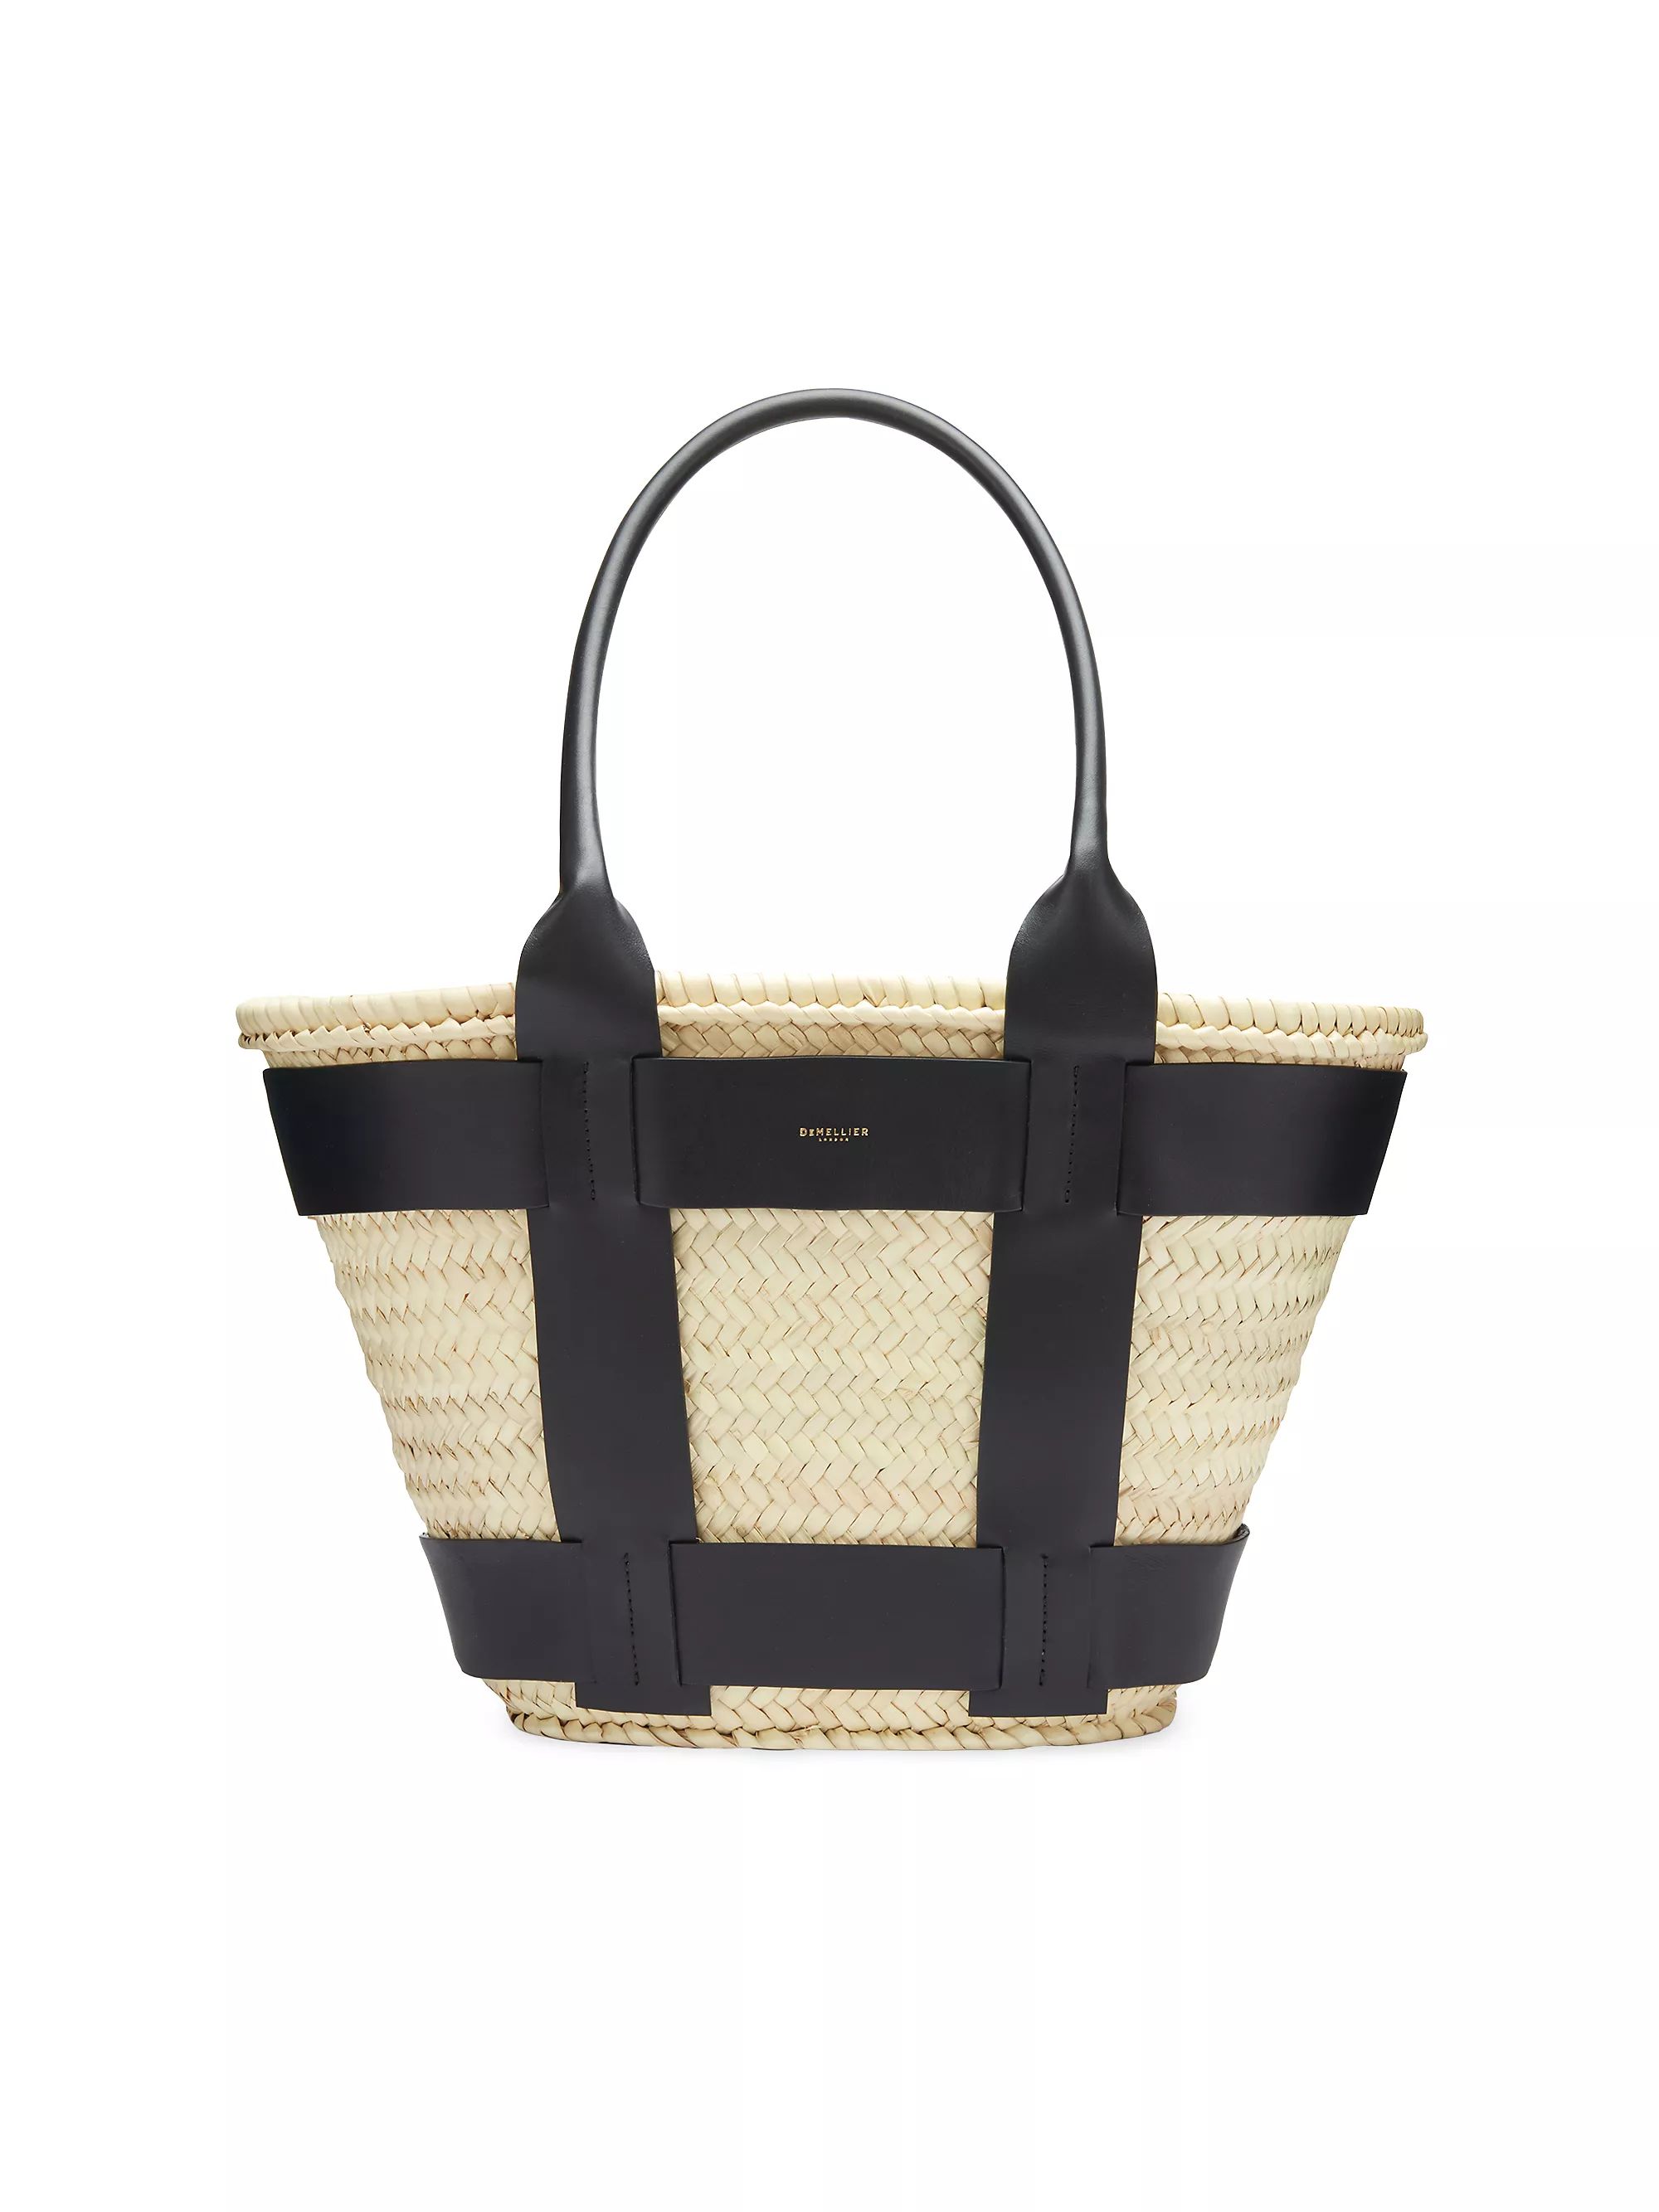 Shop By CategoryBeach & Straw BagsDeMellierSantorini Raffia Basket Bag$355 | Saks Fifth Avenue